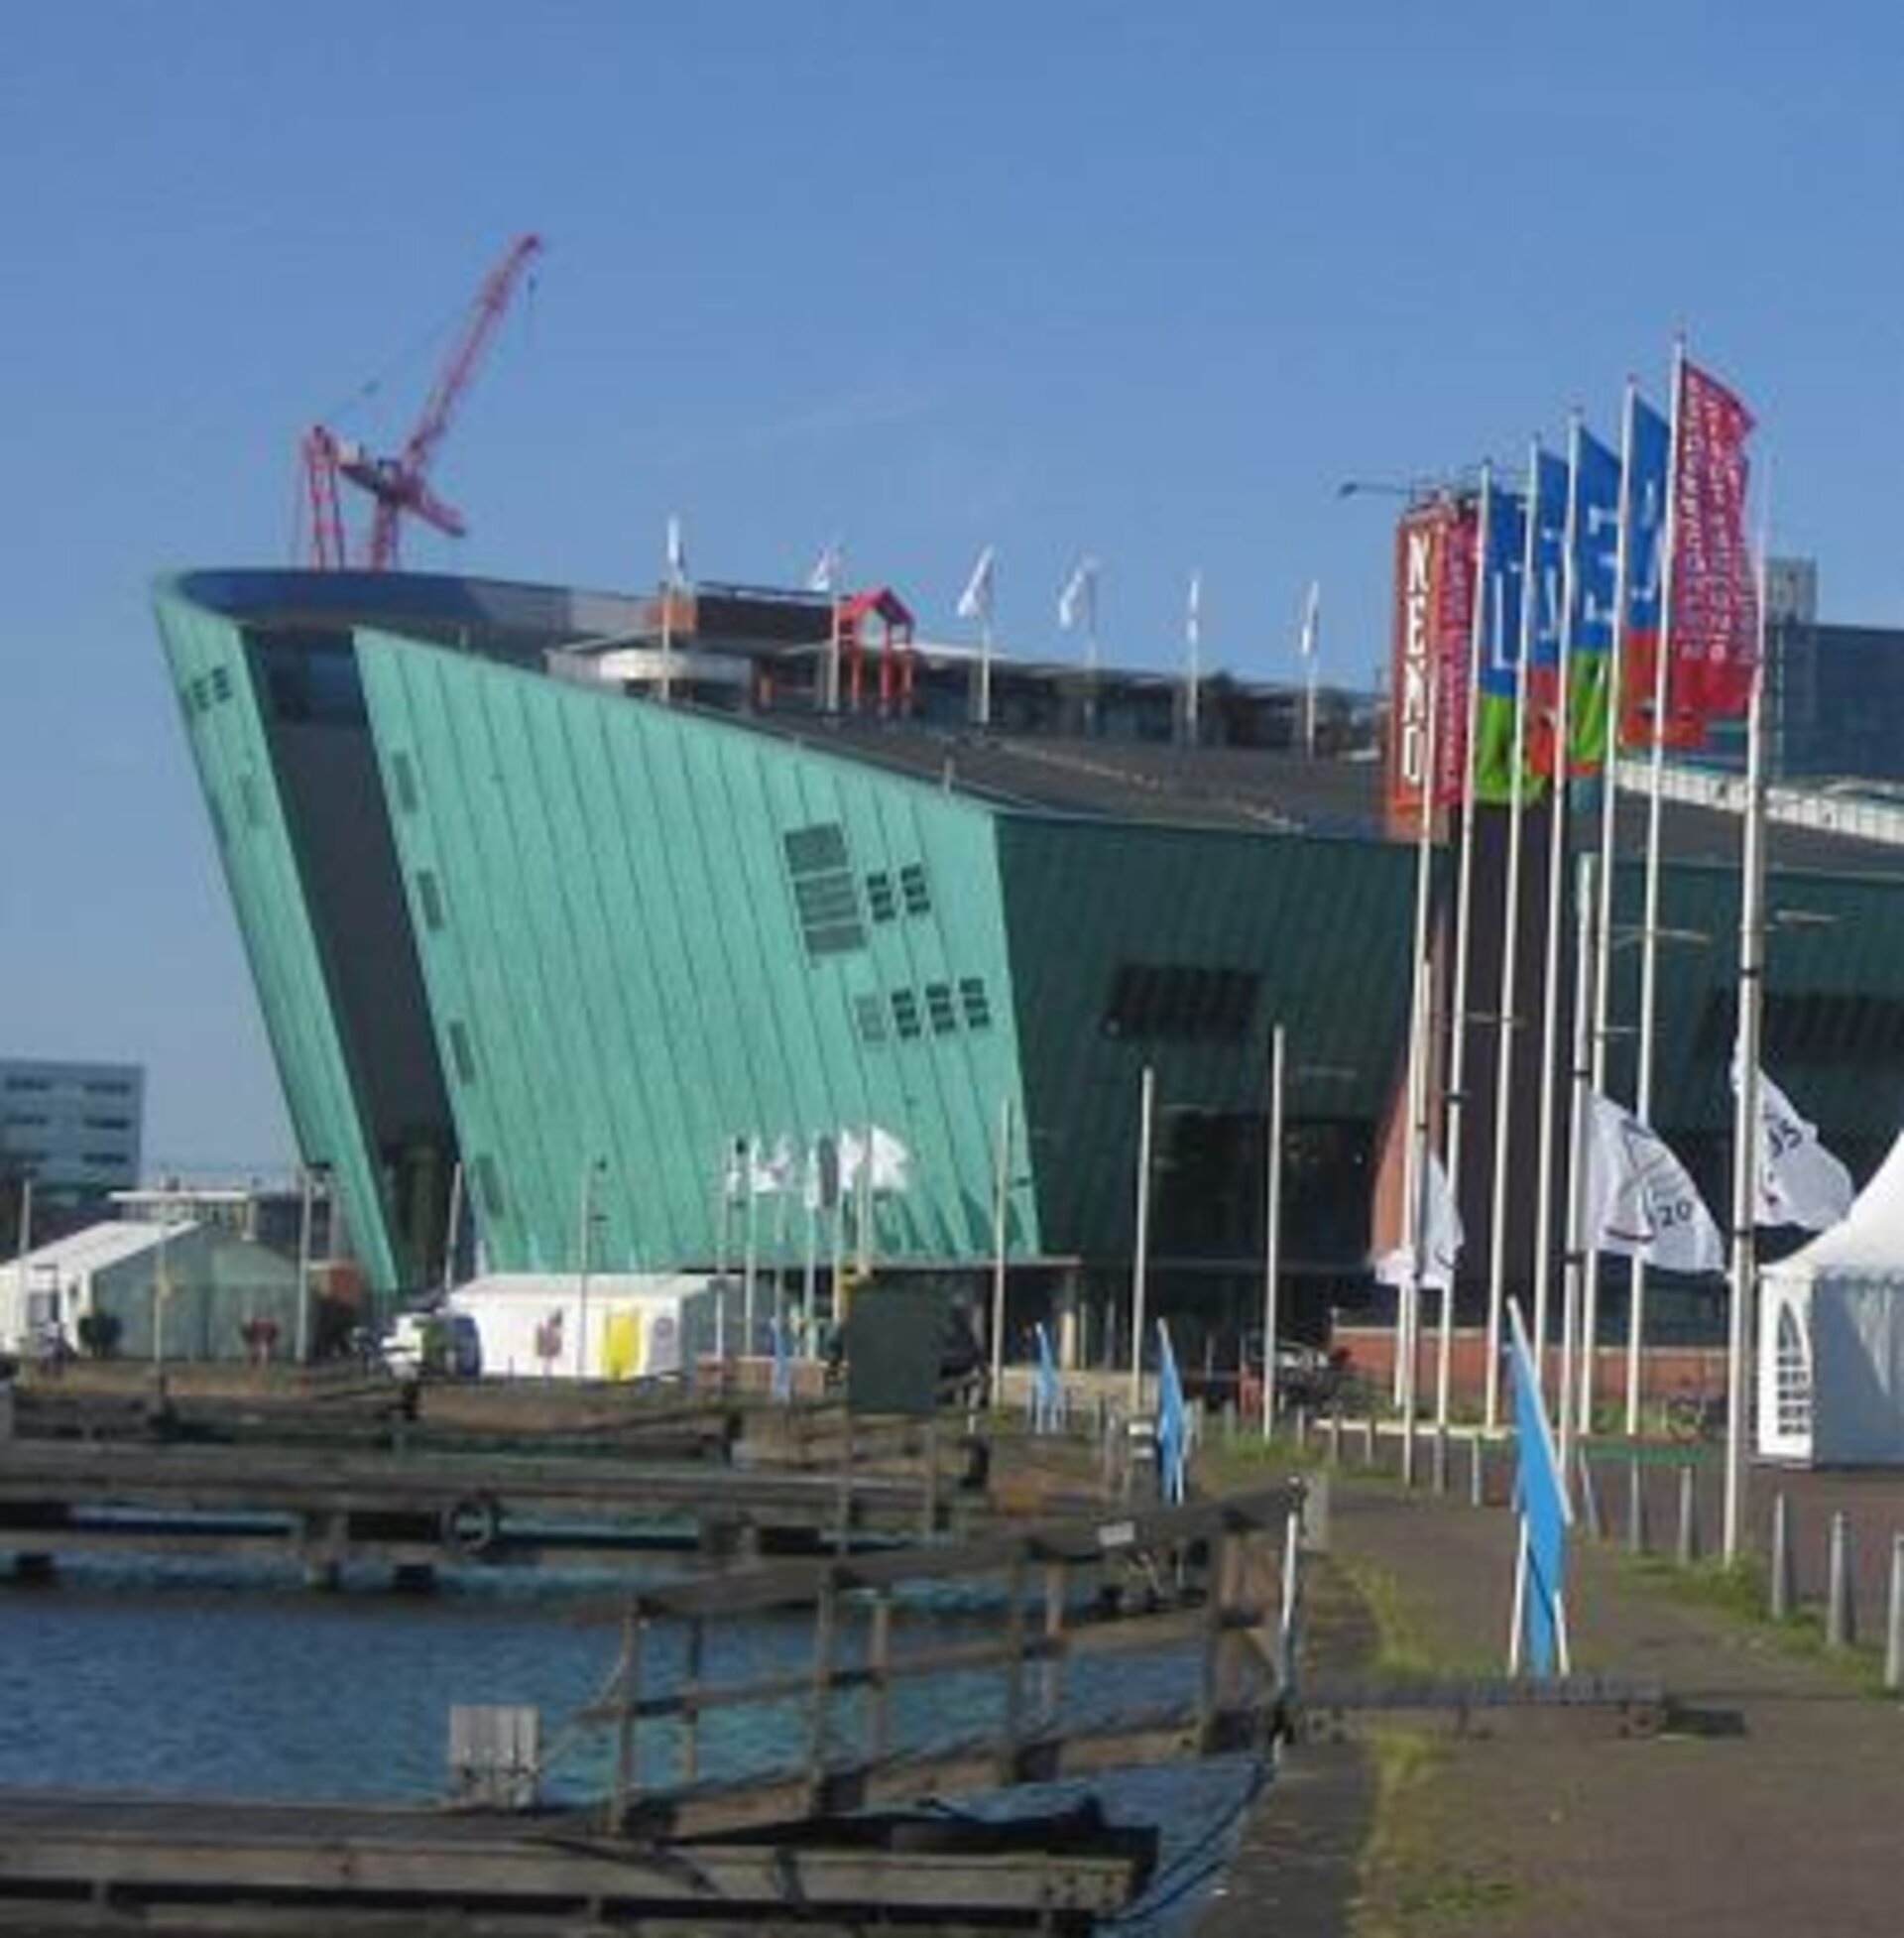 The NEMO science centre in Amsterdam